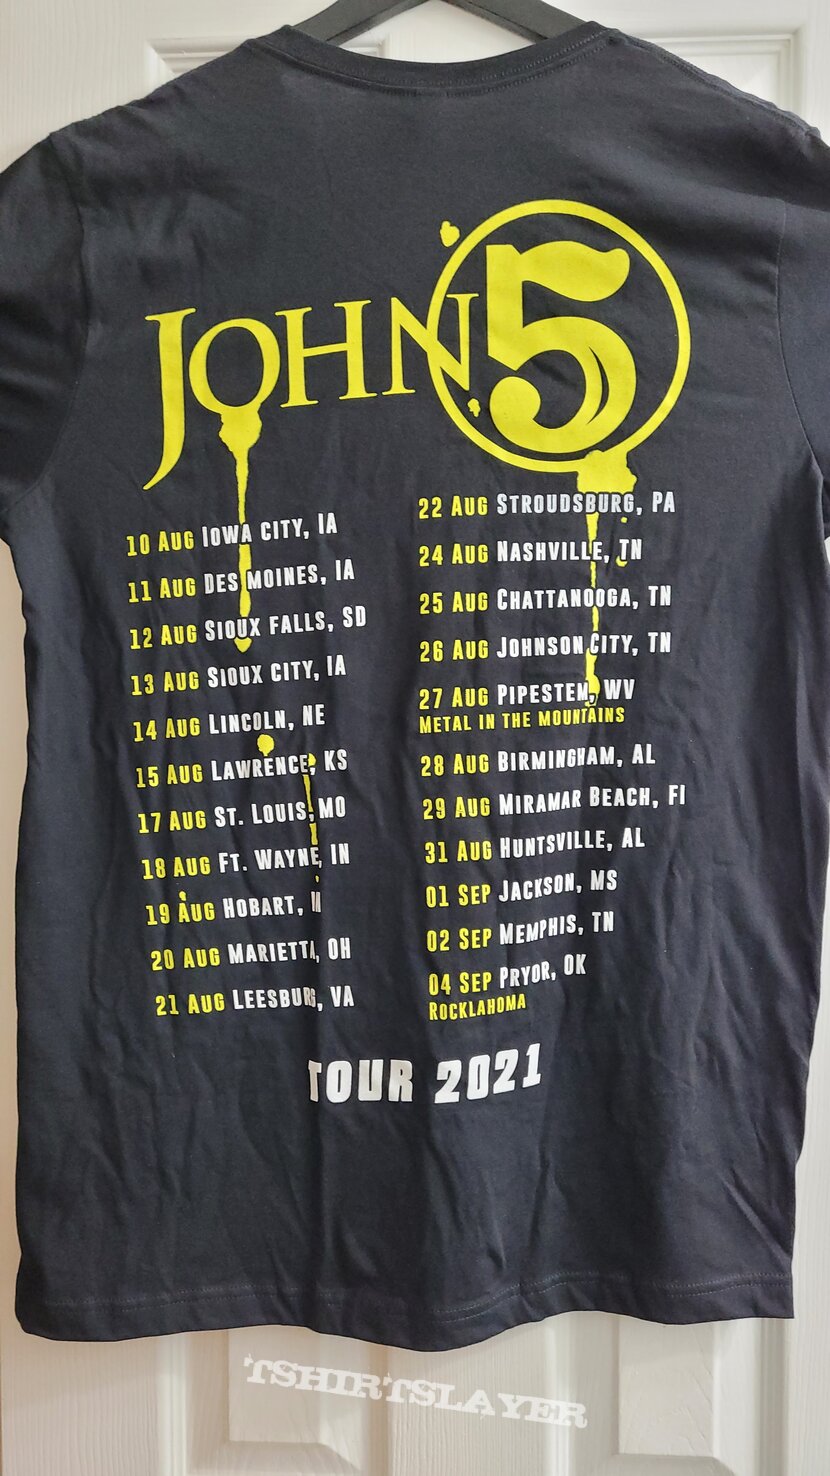 John 5 - U.S. 2021 Tour Shirt